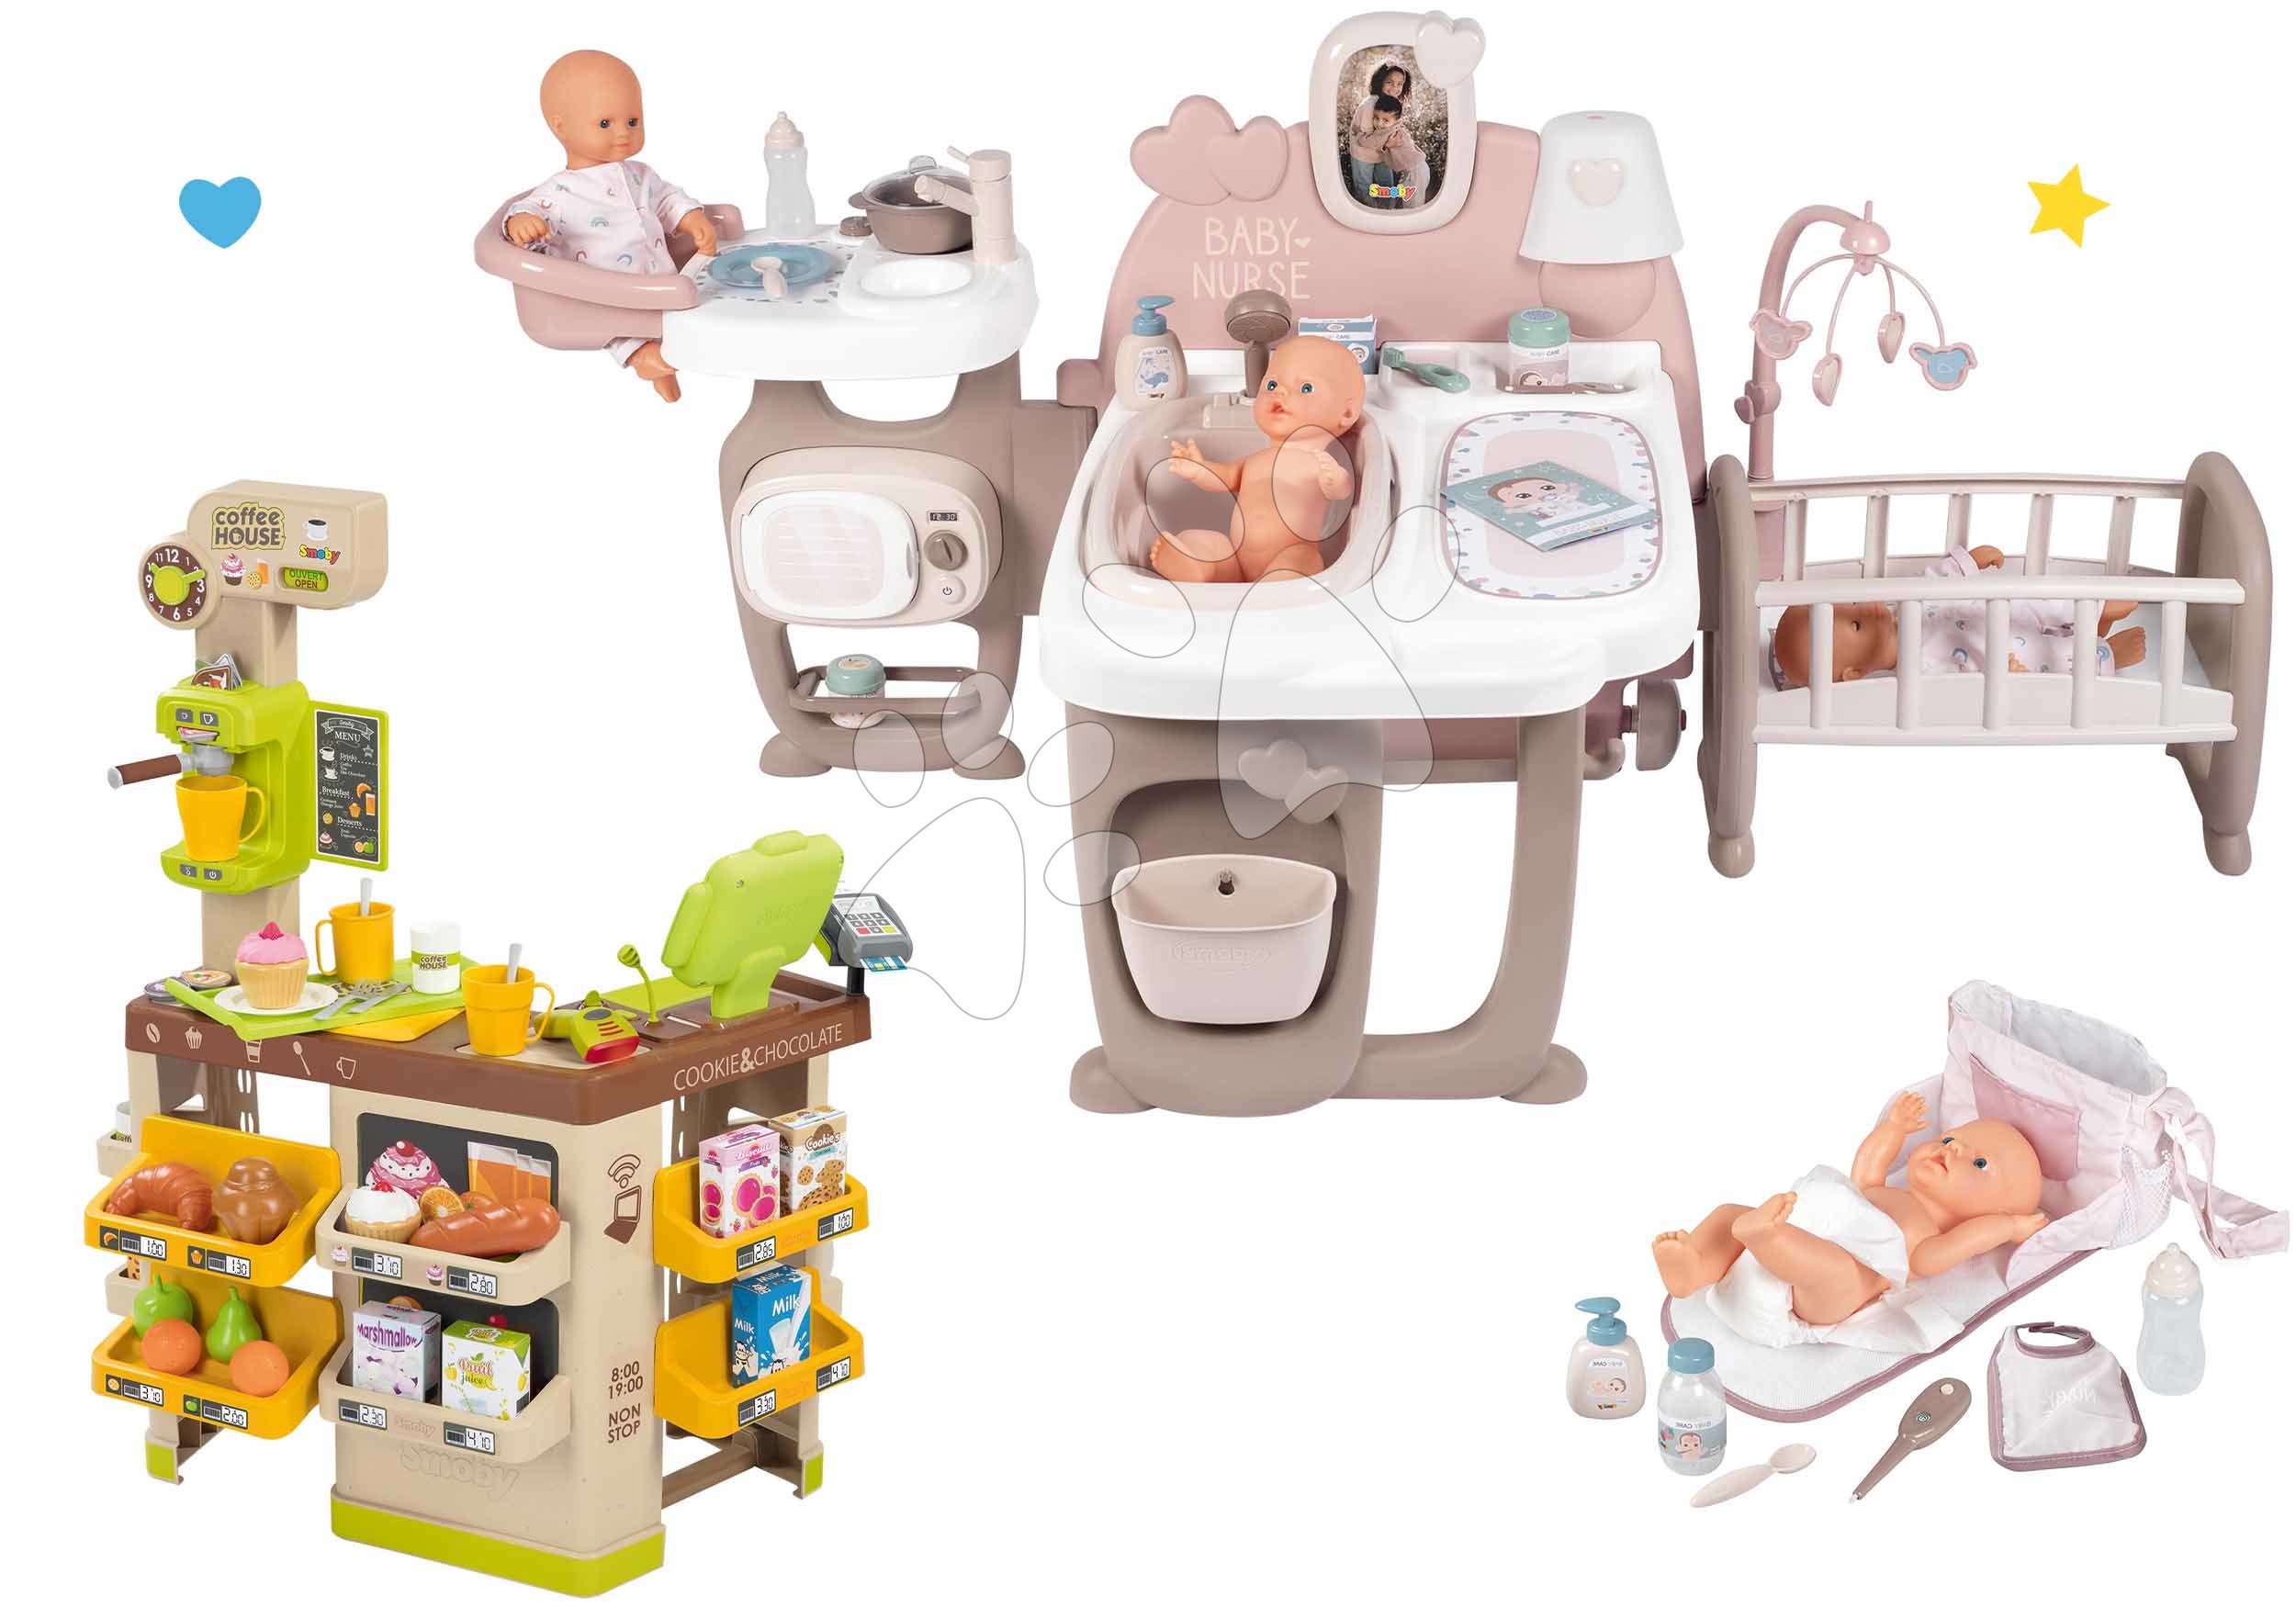 Kompleti za oskrbo punčk in dojenčkov - Komplet hišica za dojenčka Large Doll's Play Center Natur D'Amour Baby Nurse Smoby in kavarna Bio s kavomatom in previjalna torba s plenico